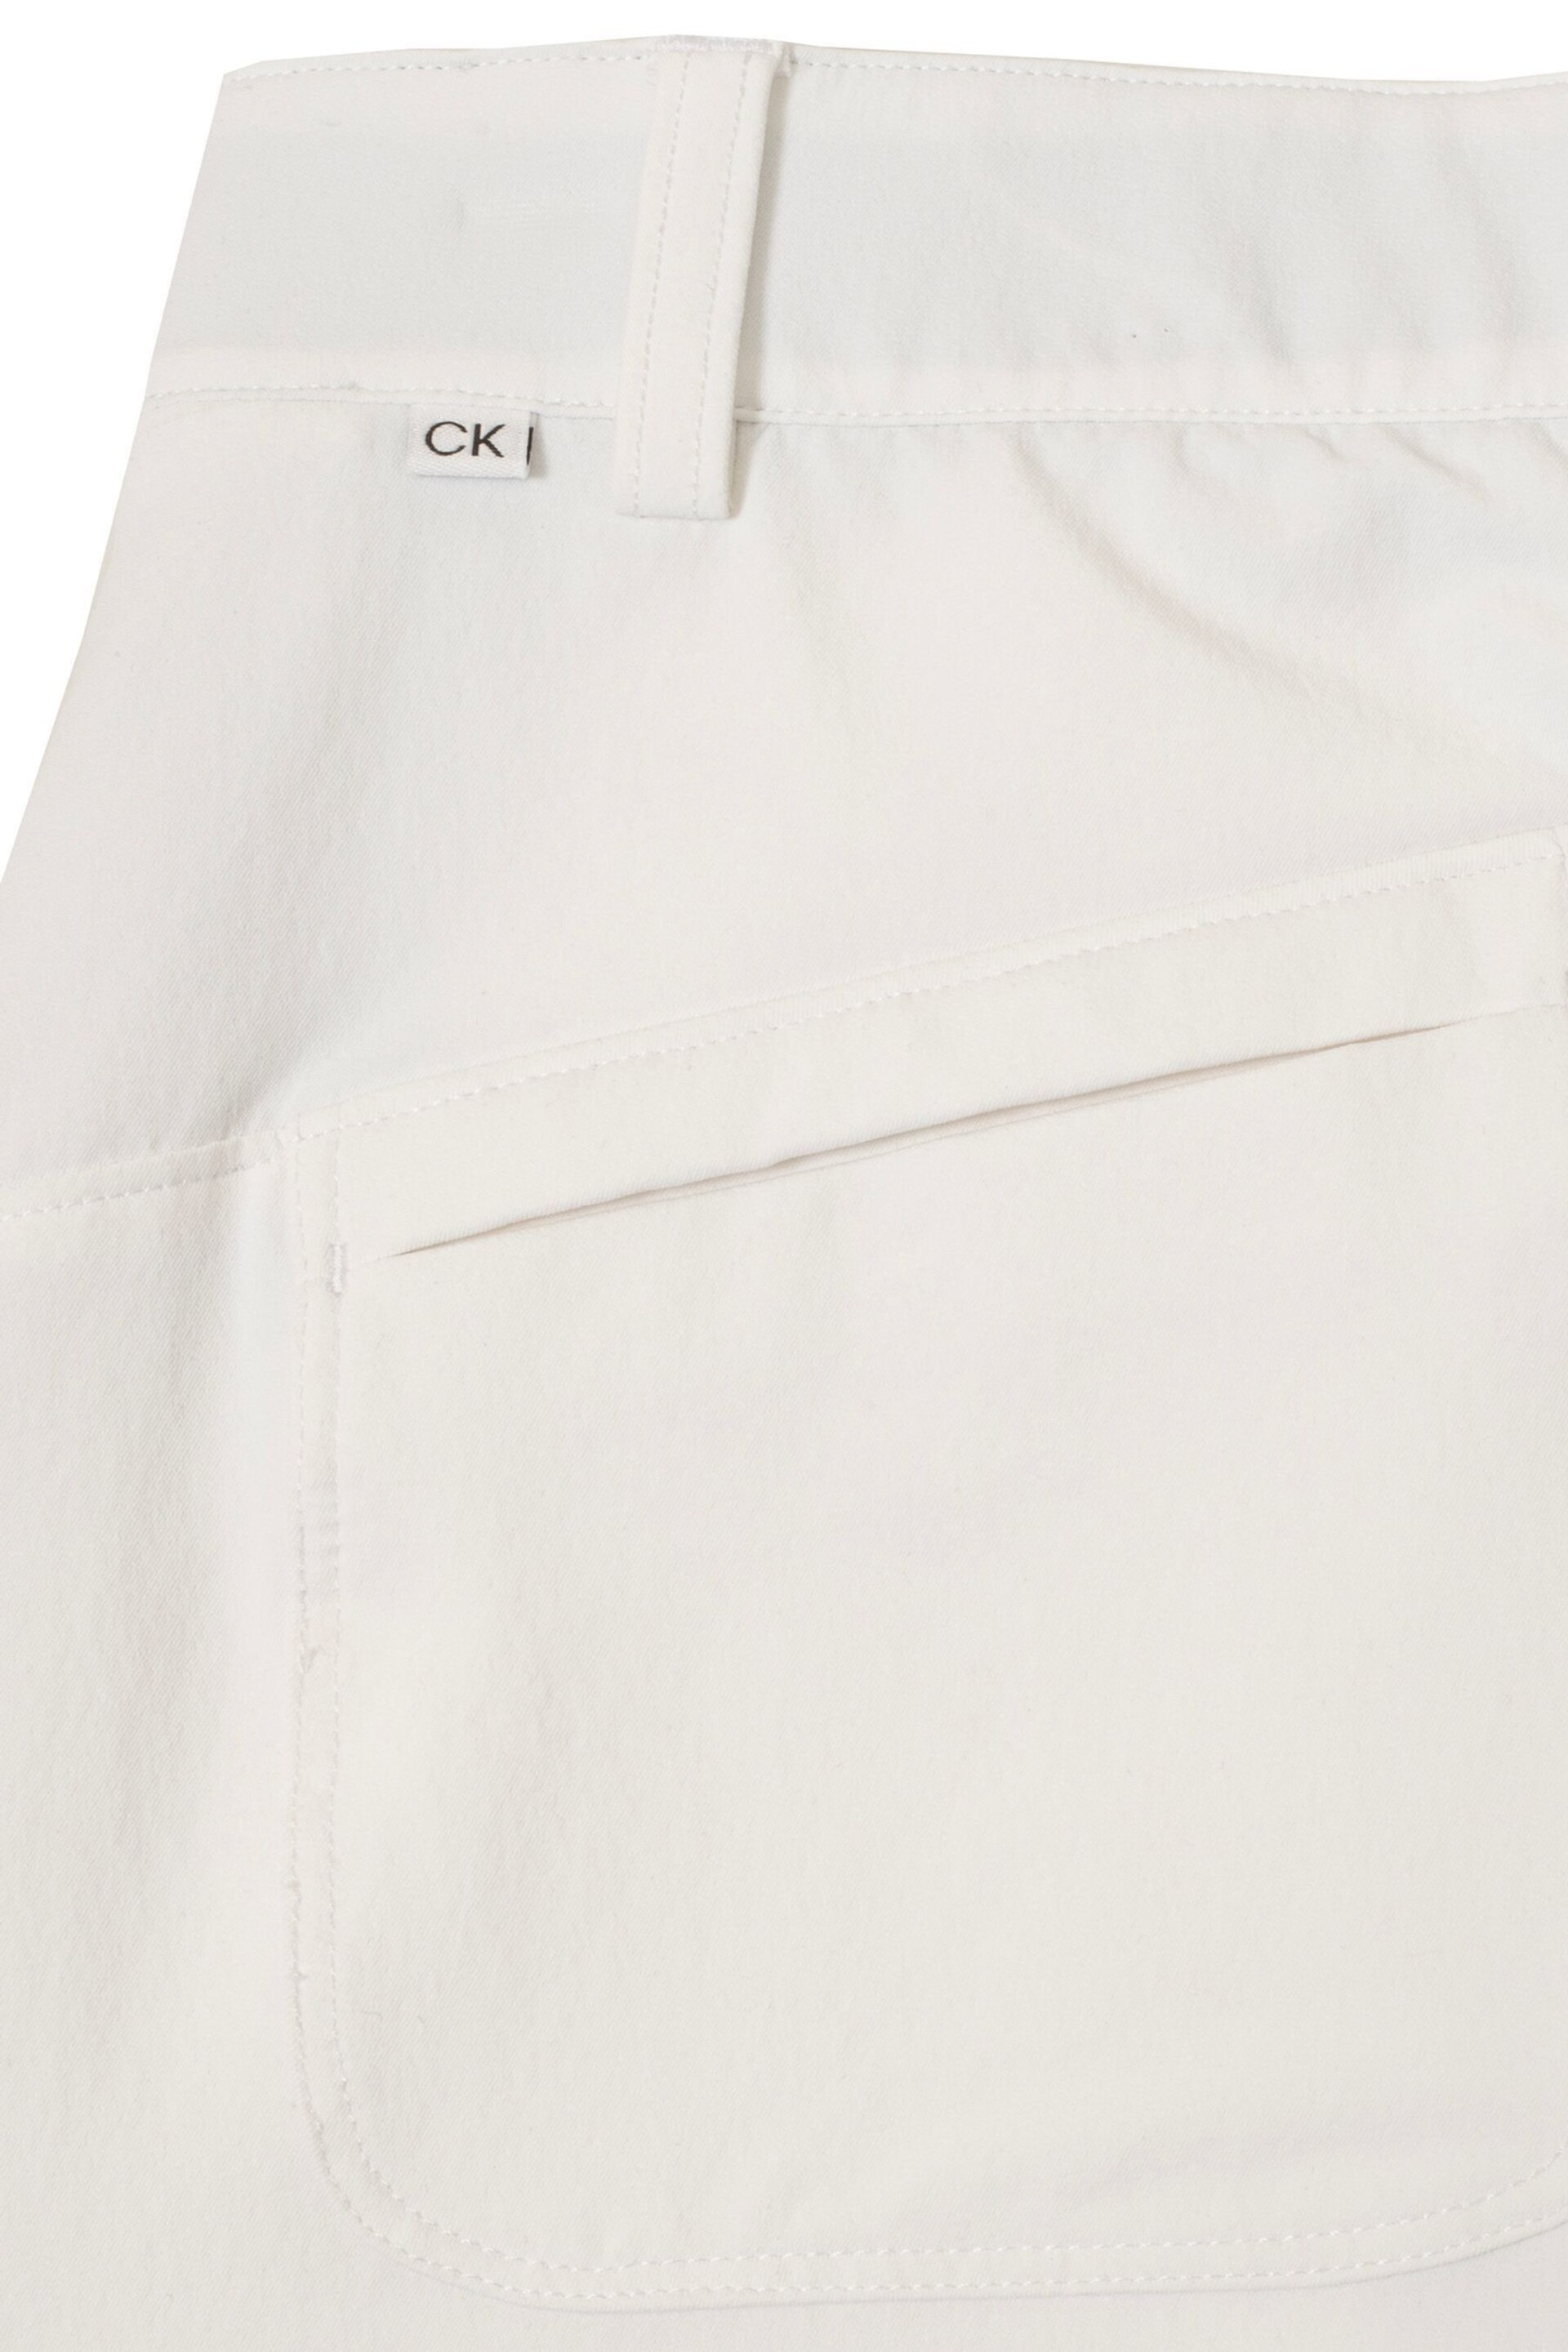 Calvin Klein Golf Rosepoint White Skort - Image 15 of 15